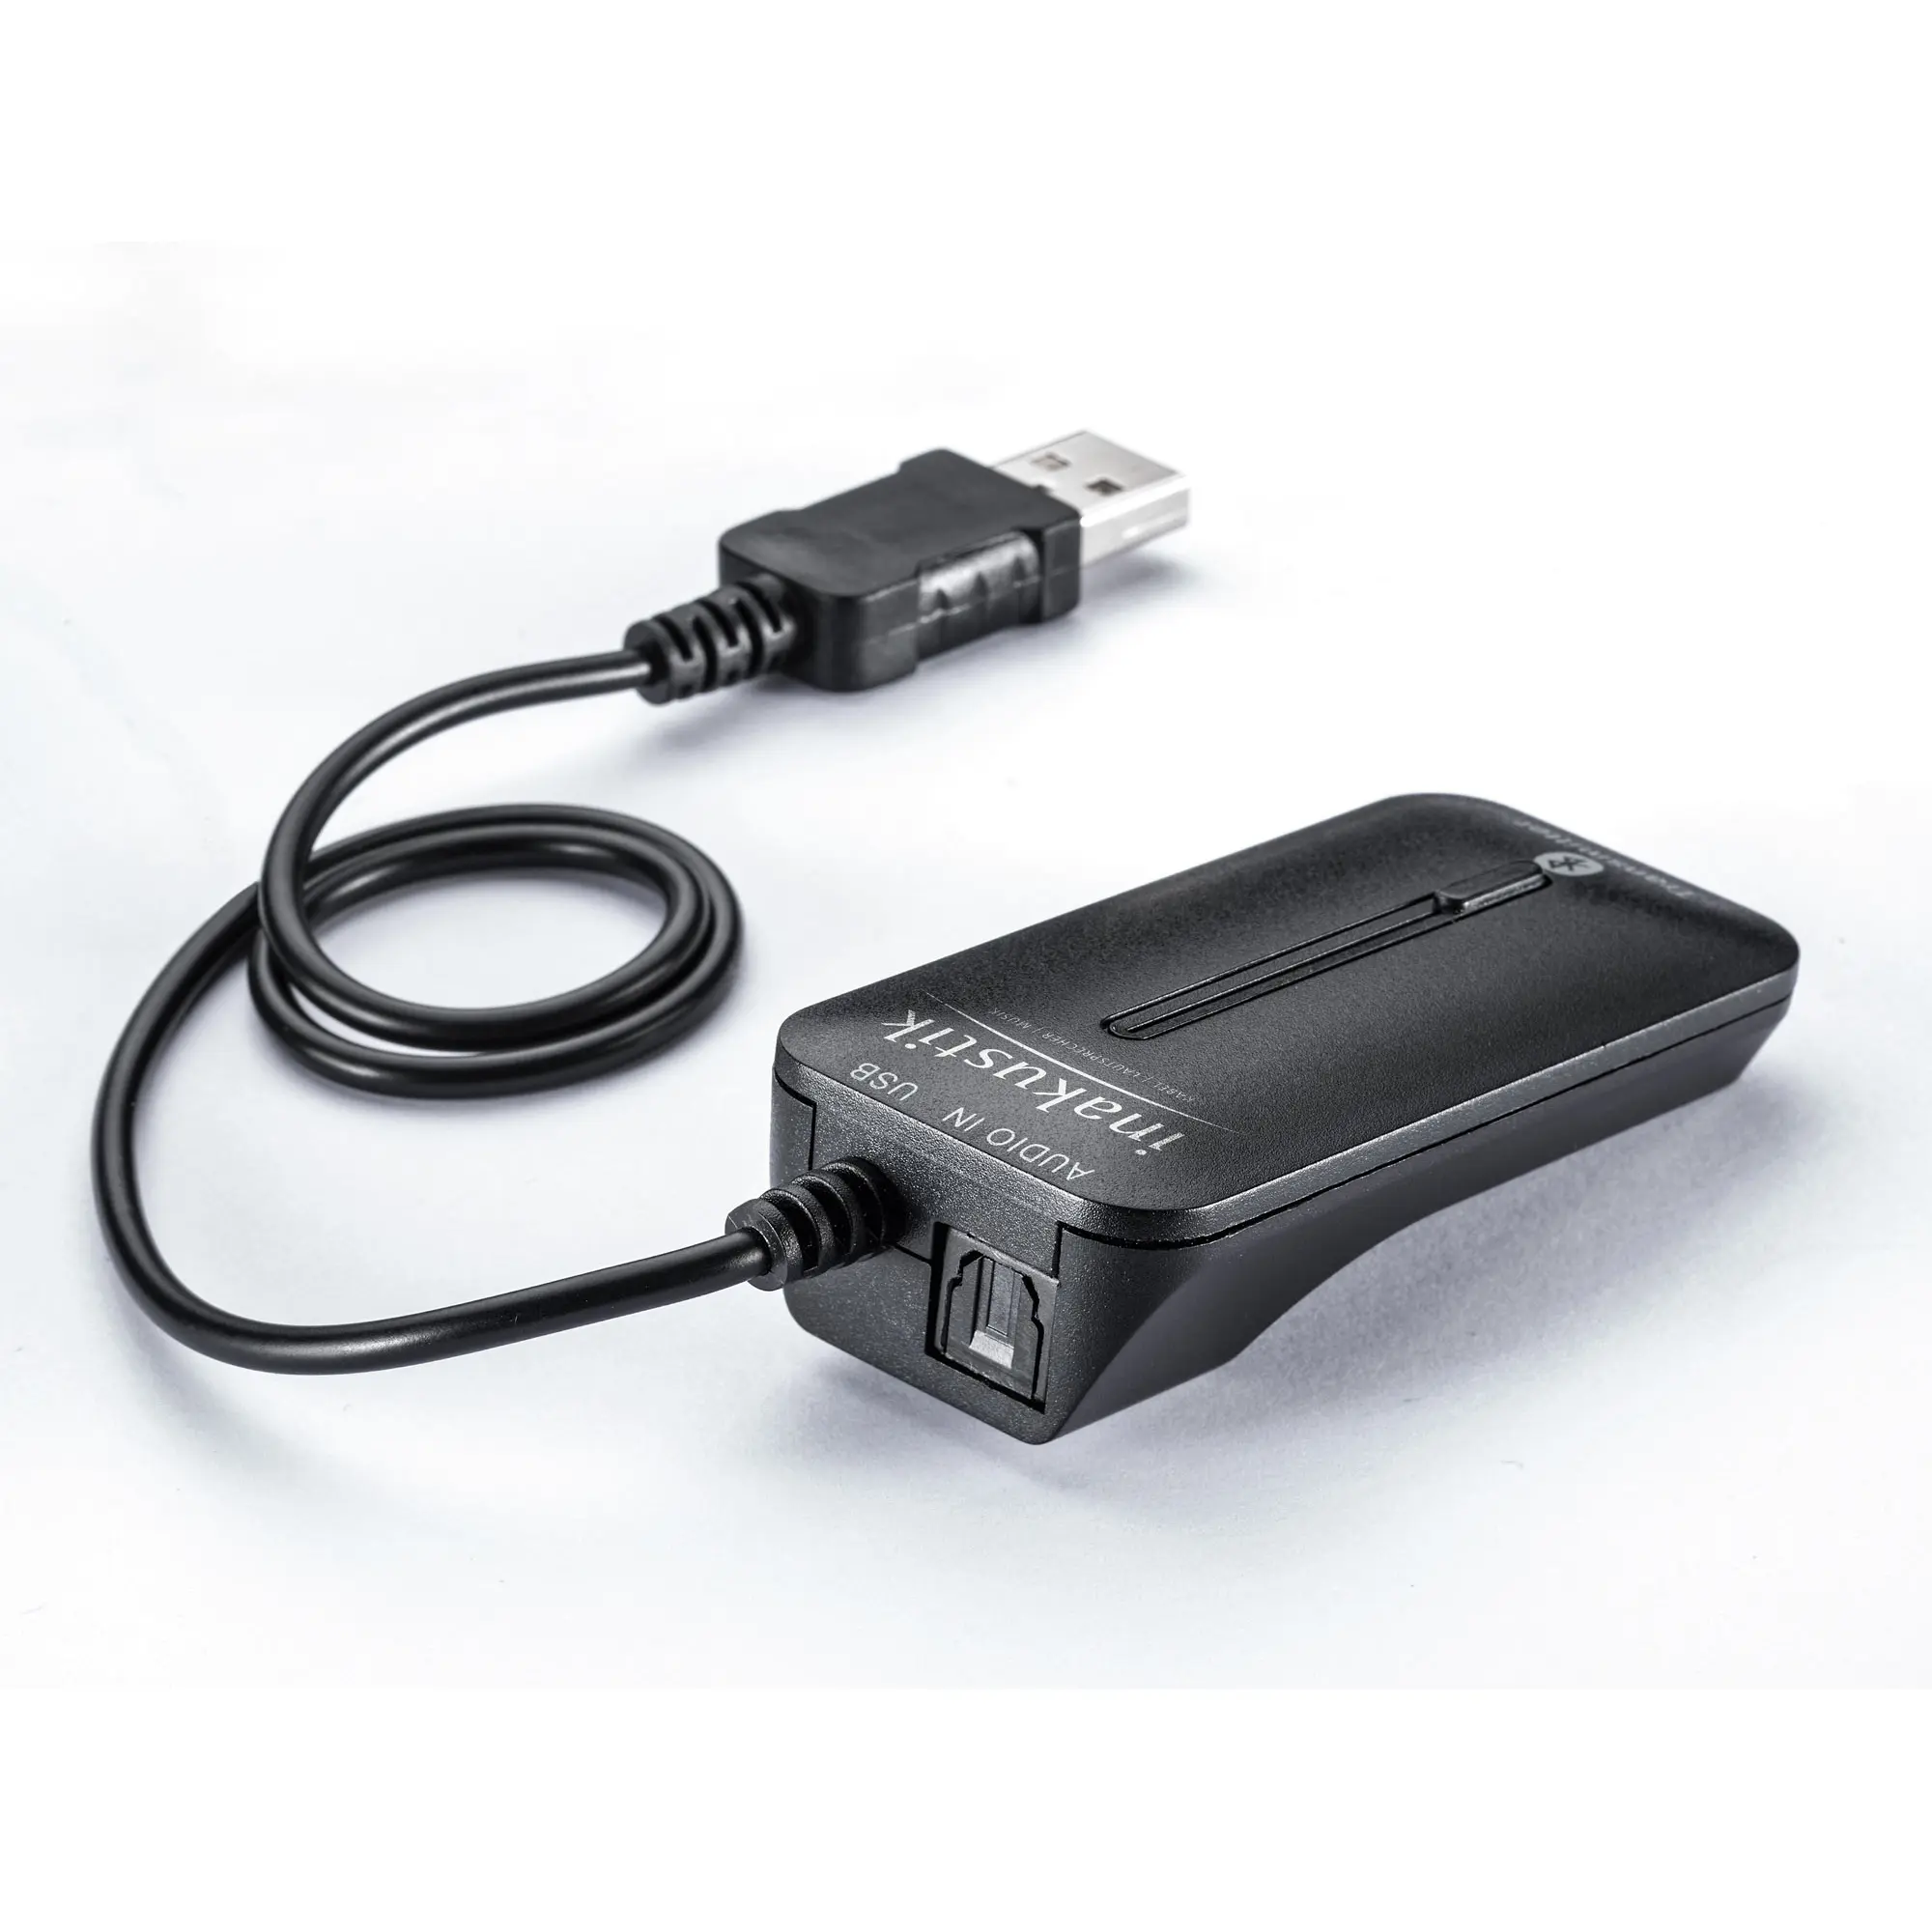 Bluetooth audio transmitter & splitter | Optical